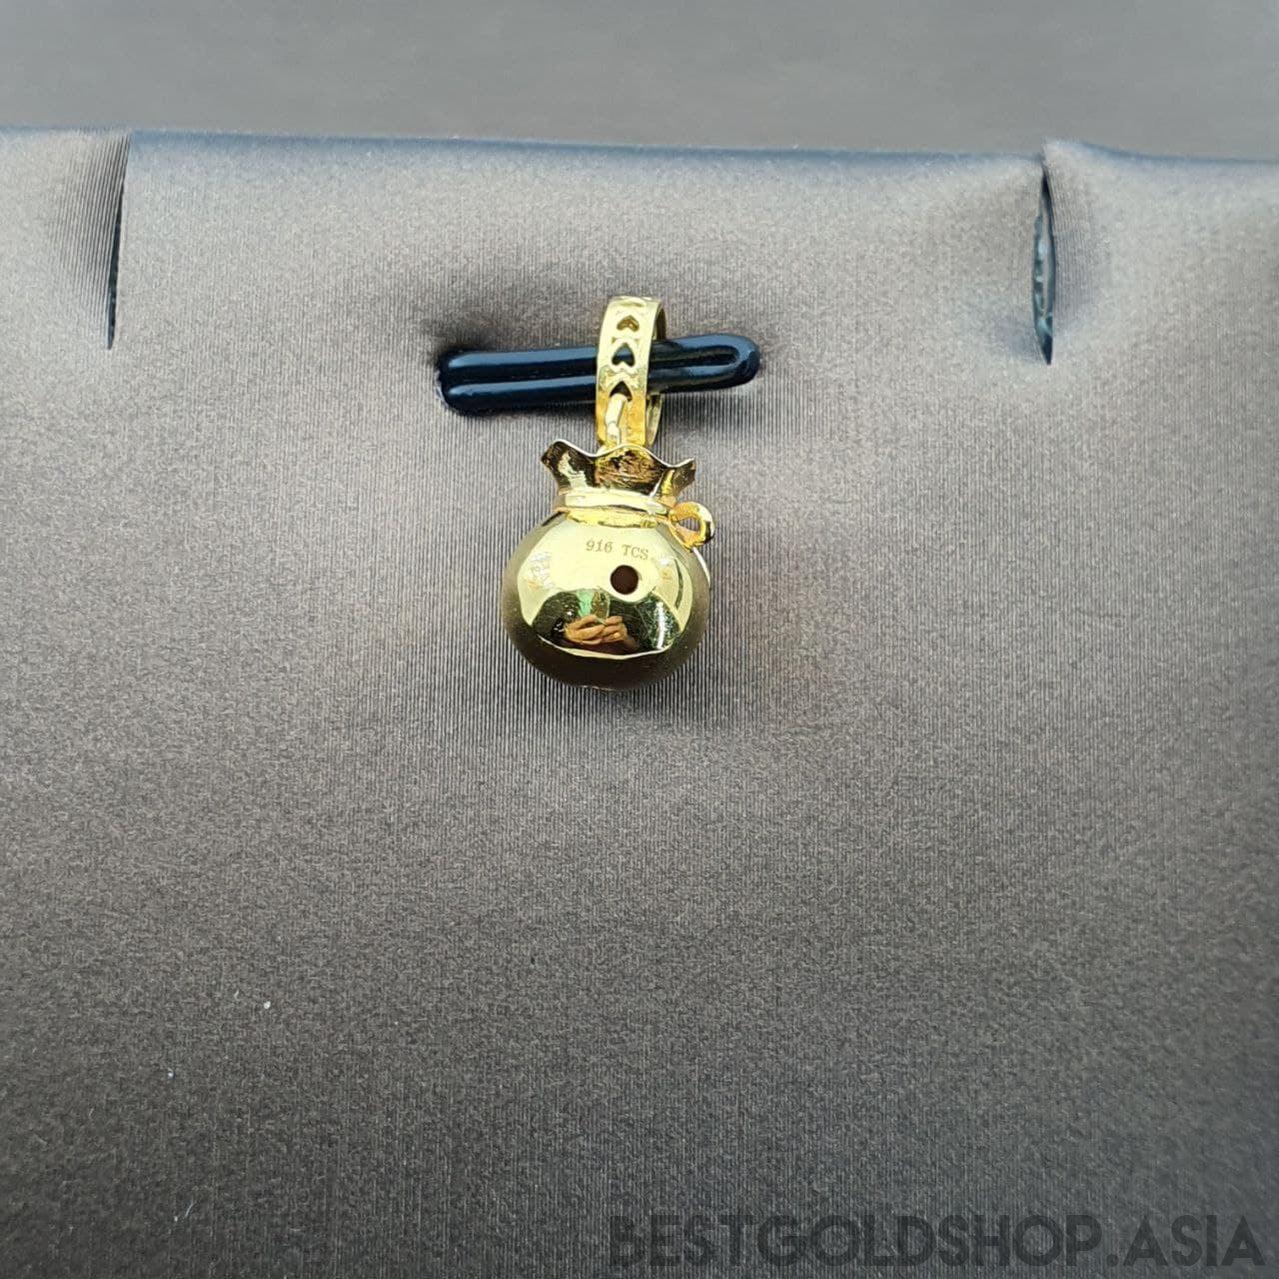 22k / 916 Gold Money Bag Charm / Pendant-Charms & Pendants-Best Gold Shop